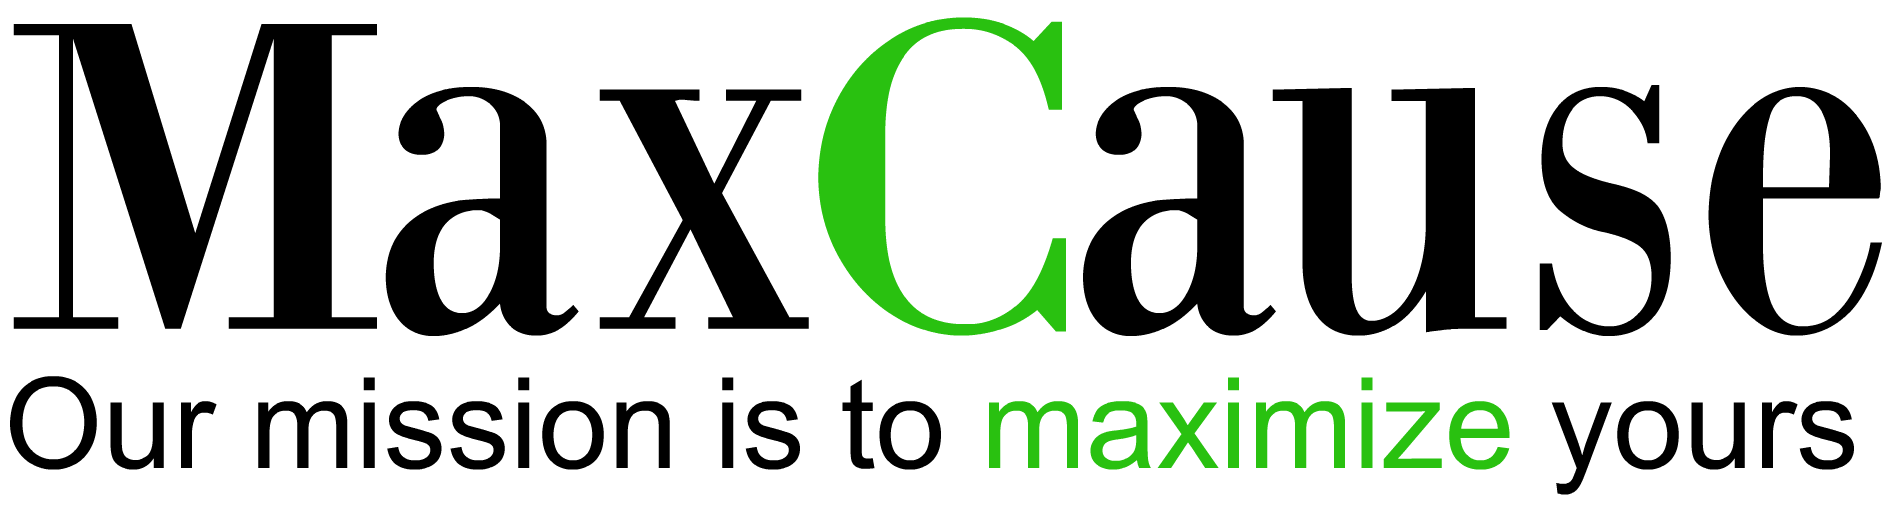 maxcause logo 1902x510 clear